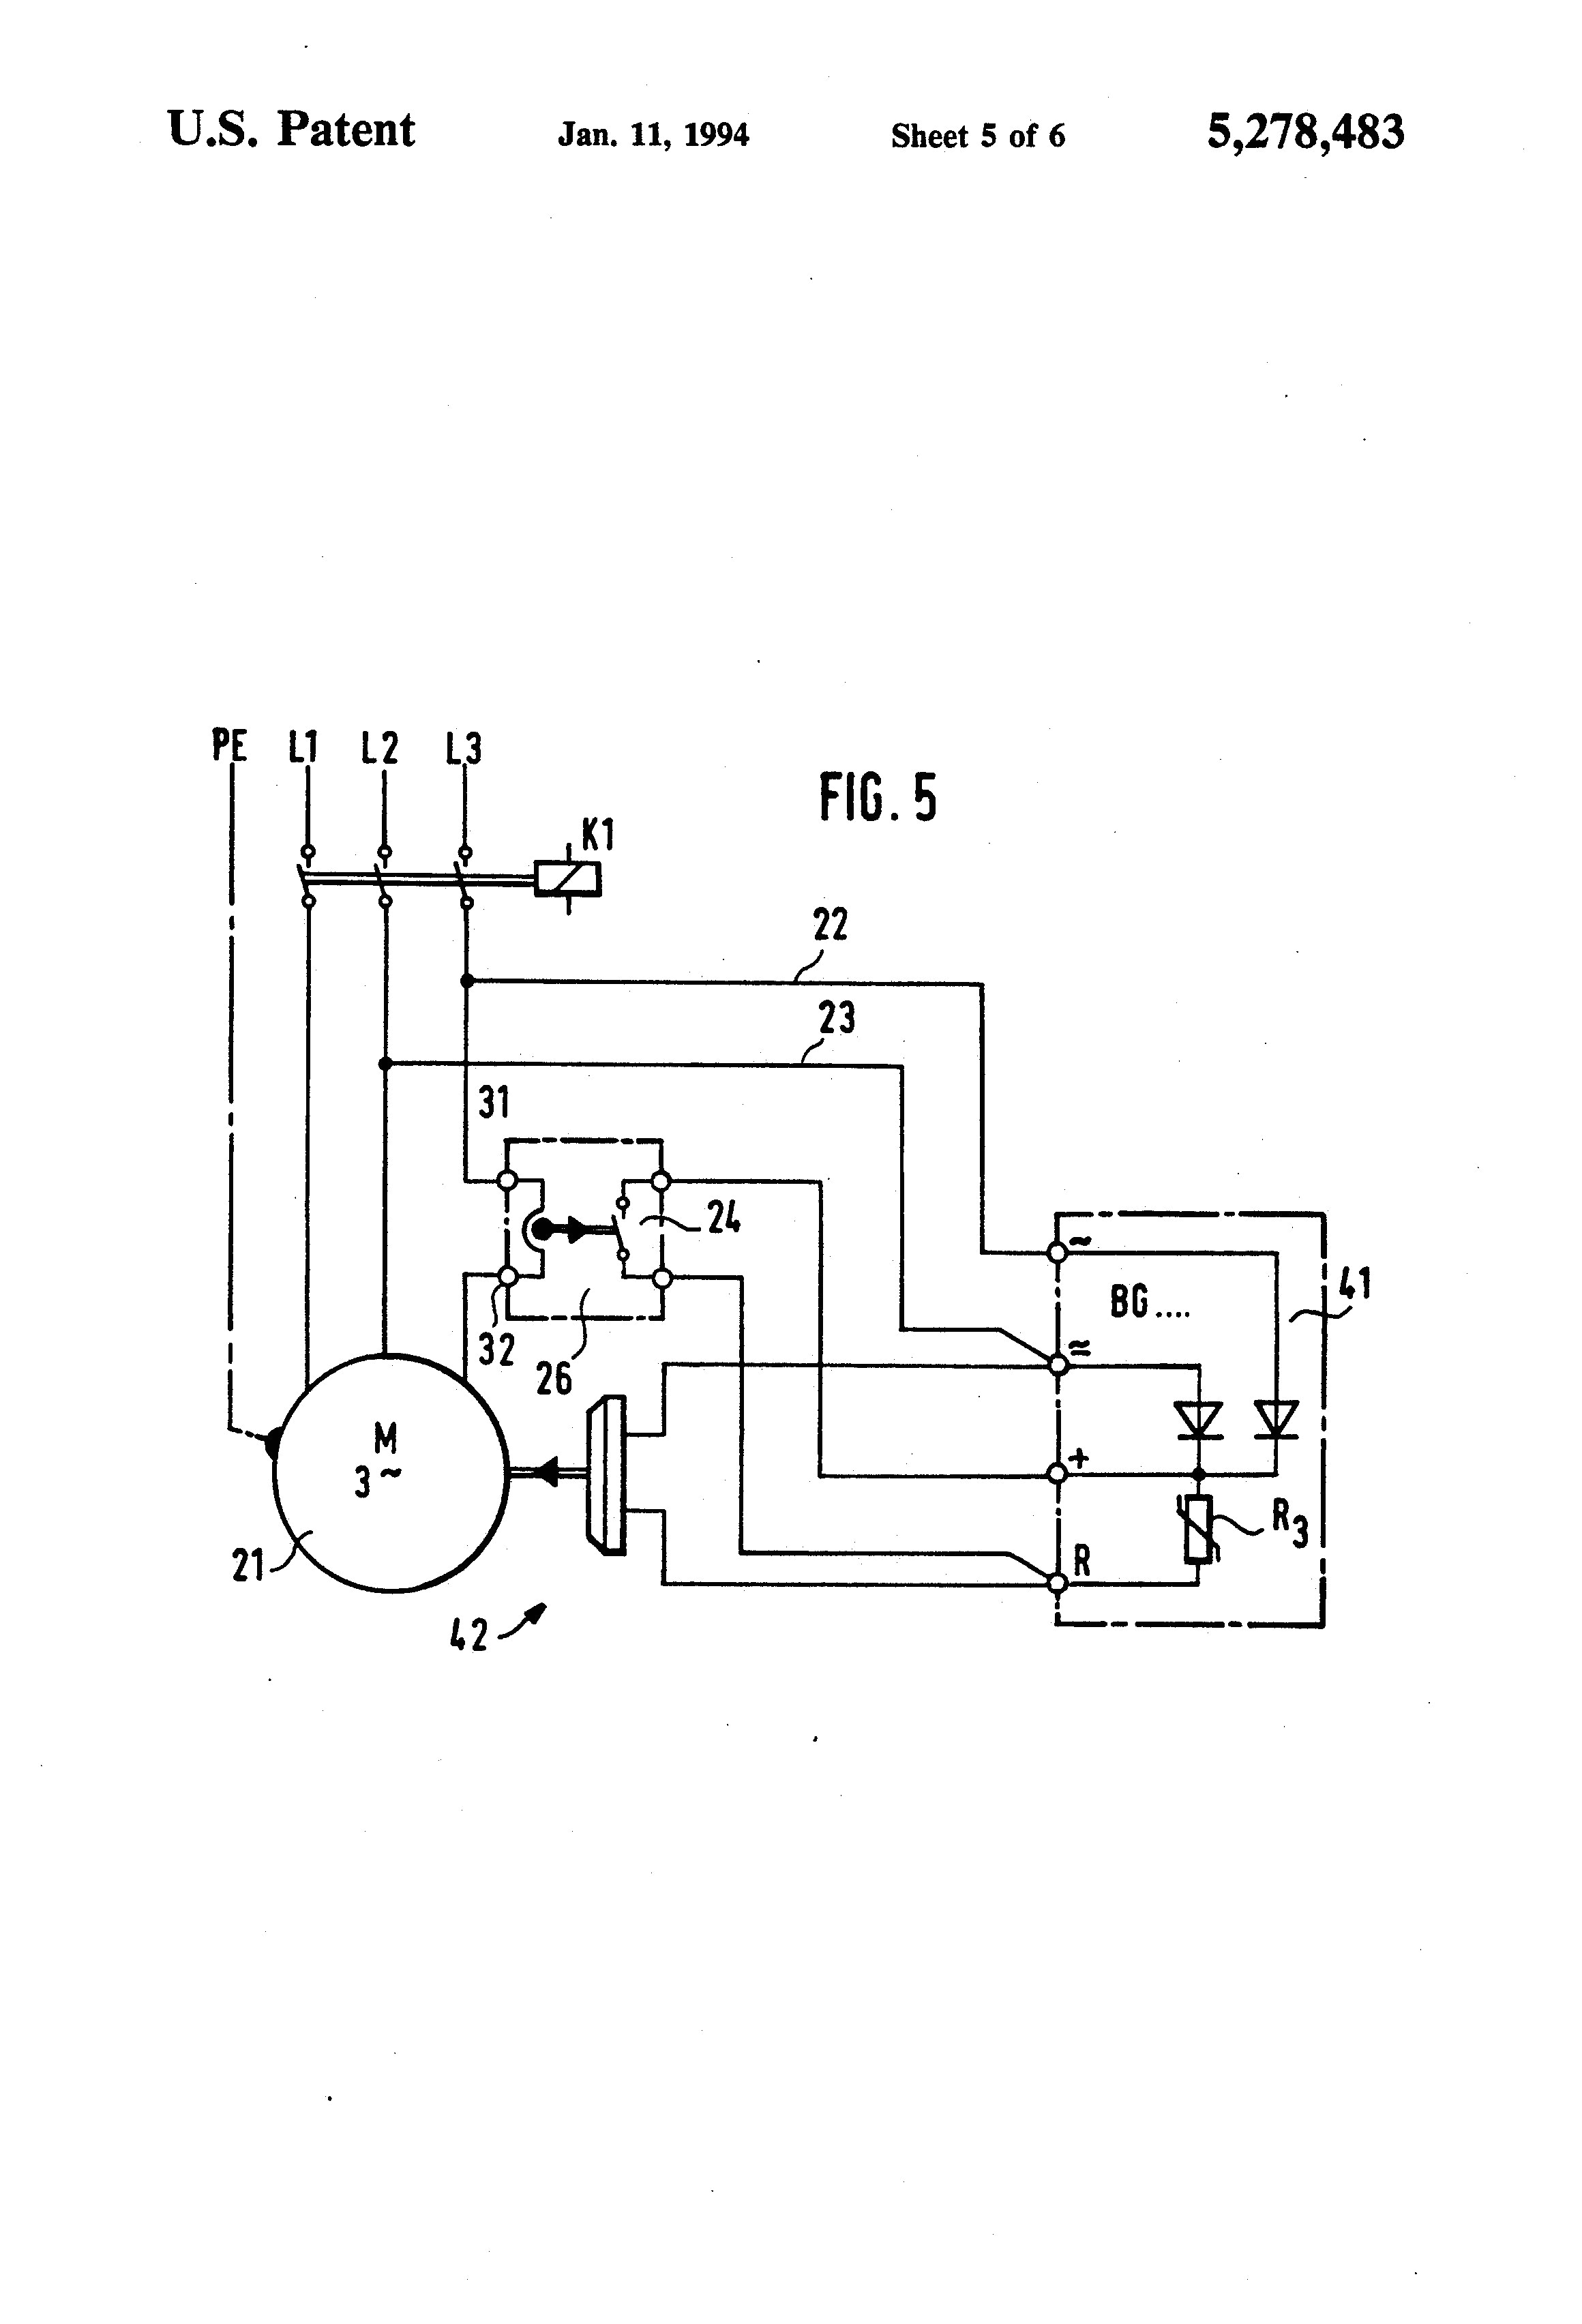 sew motor wiring wiring diagram val sew motor wiring diagram sew motor wiring